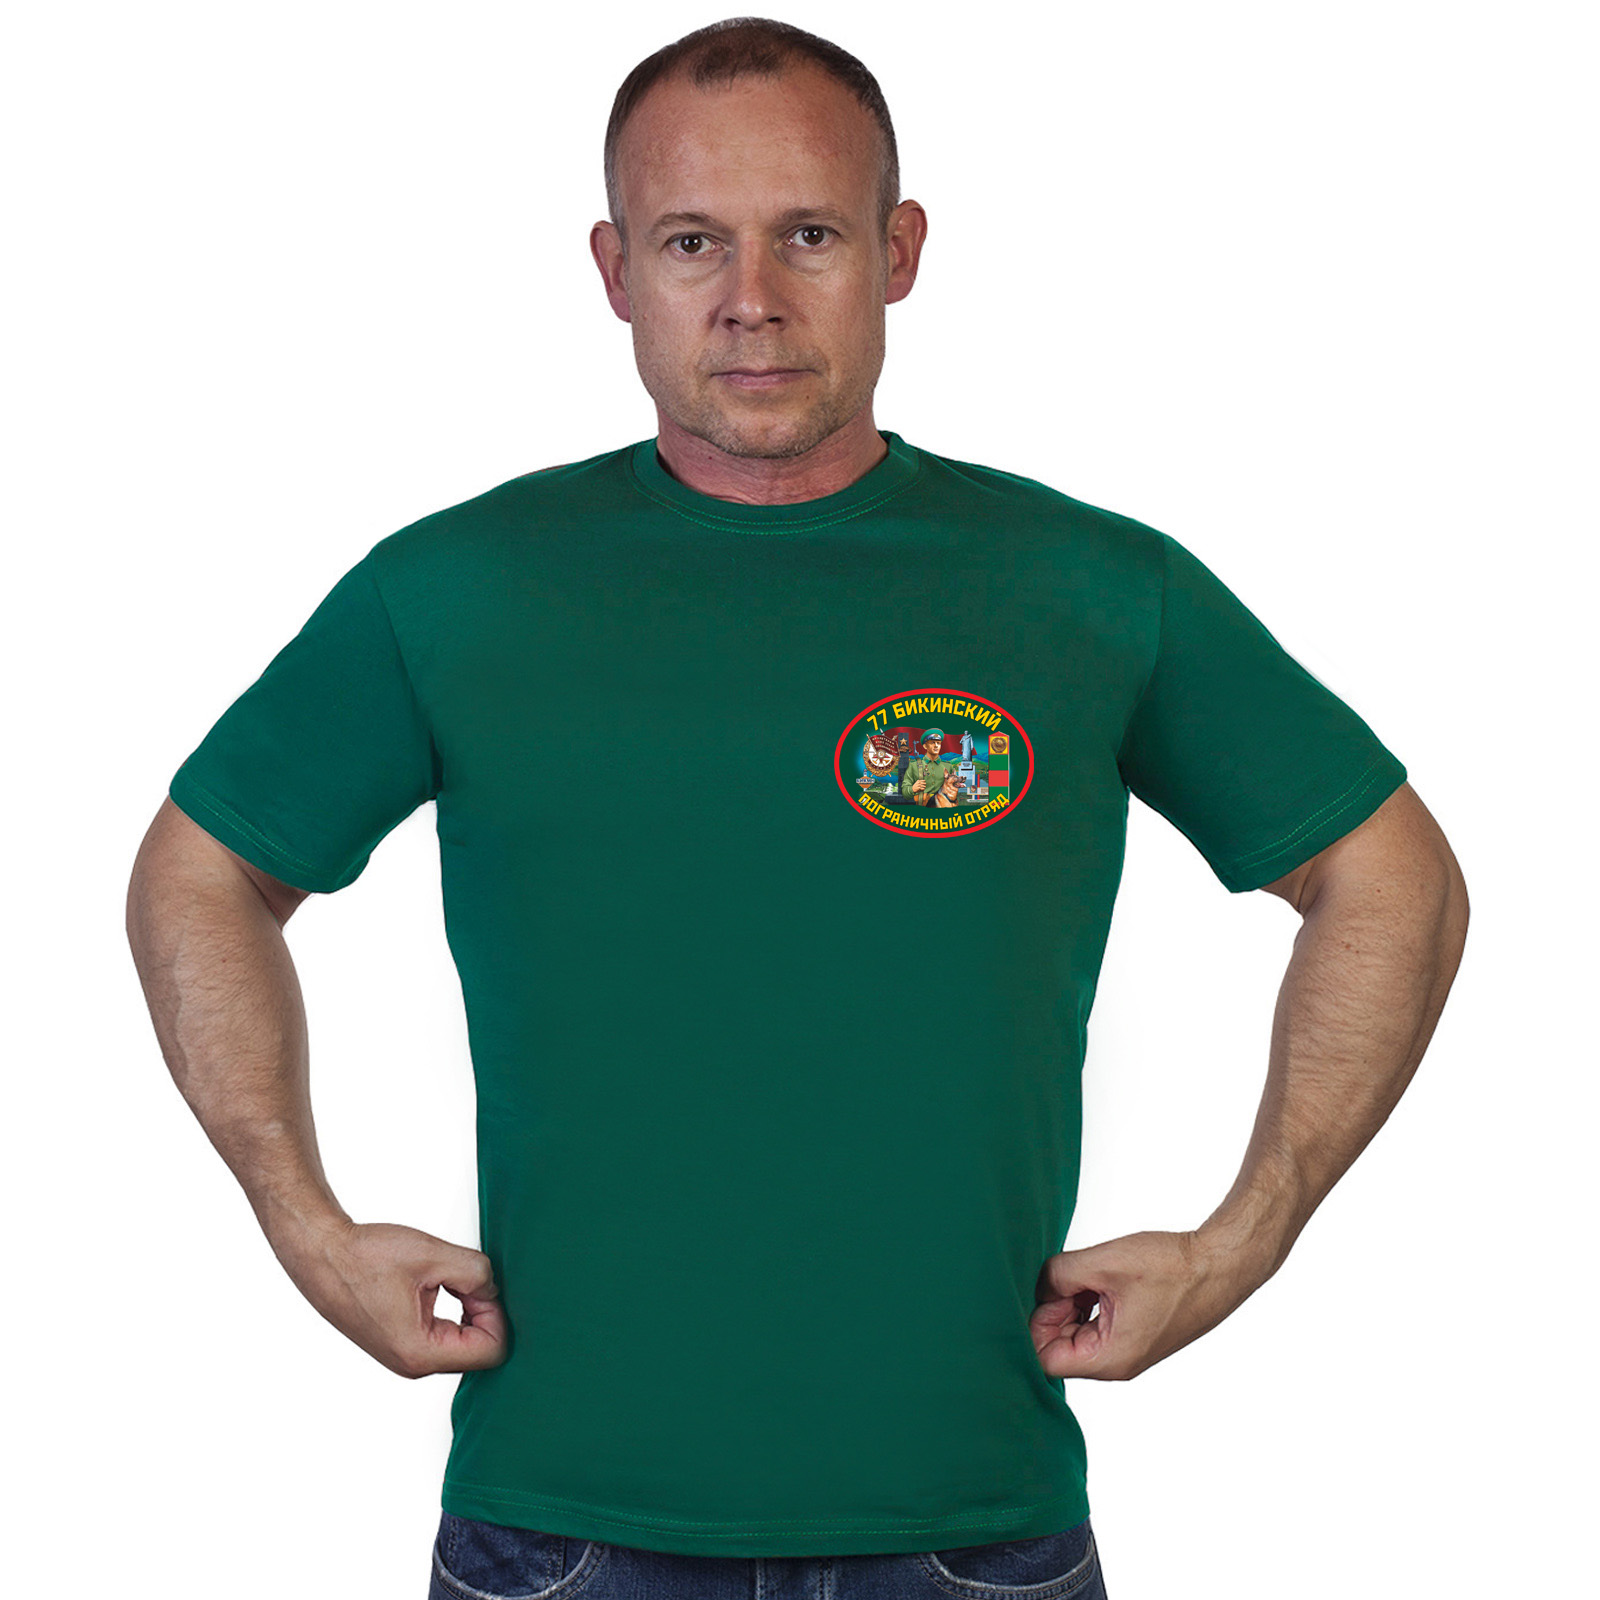 Купить в интернет магазине футболку 77 Бикинский пограничный отряд